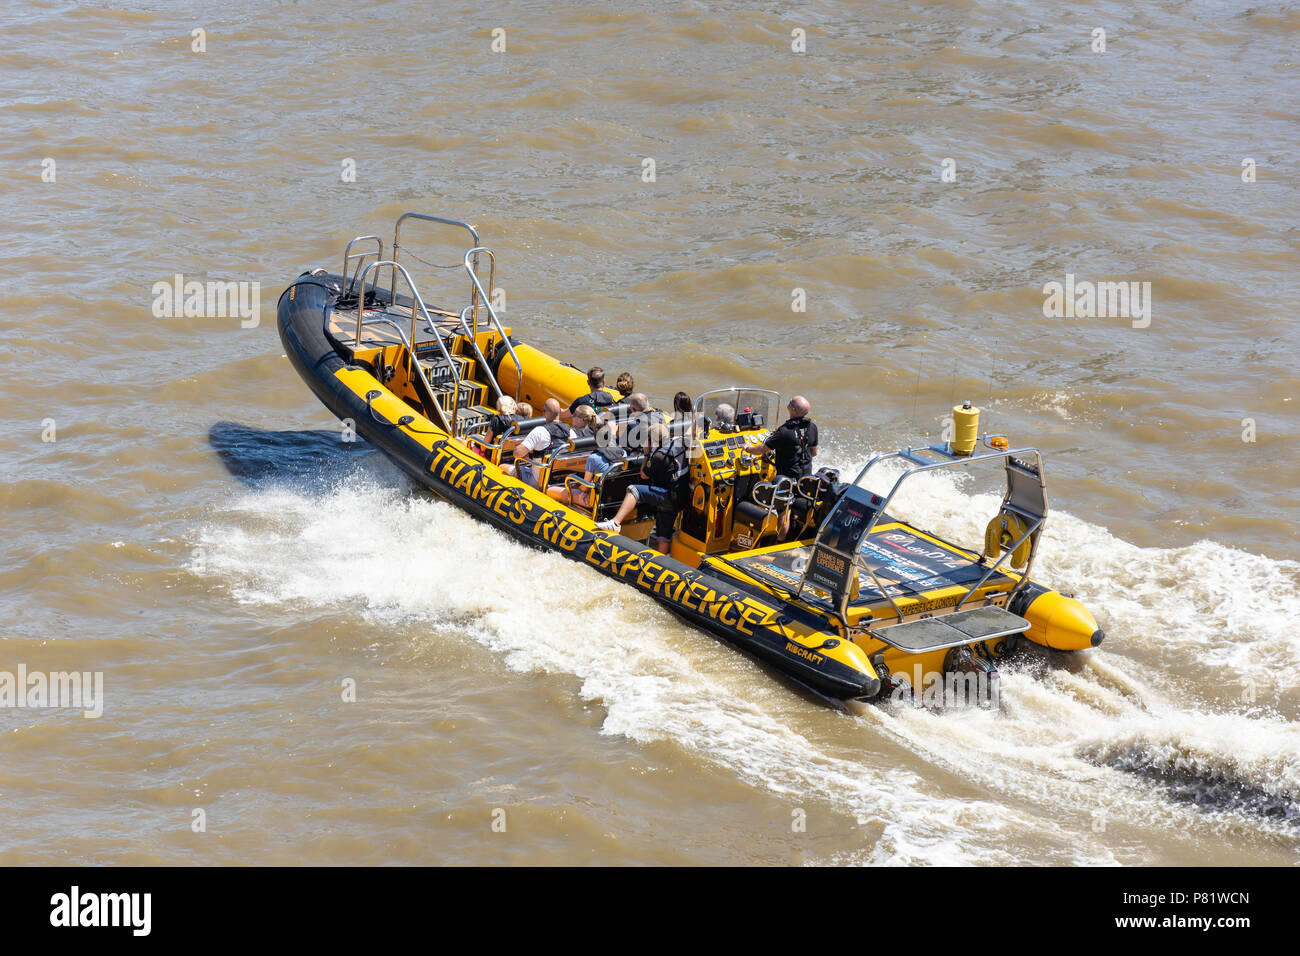 L'expérience de côtes Thames power balade en bateau sur la Tamise à South Bank, London Borough of Lambeth, Greater London, Angleterre, Royaume-Uni Banque D'Images